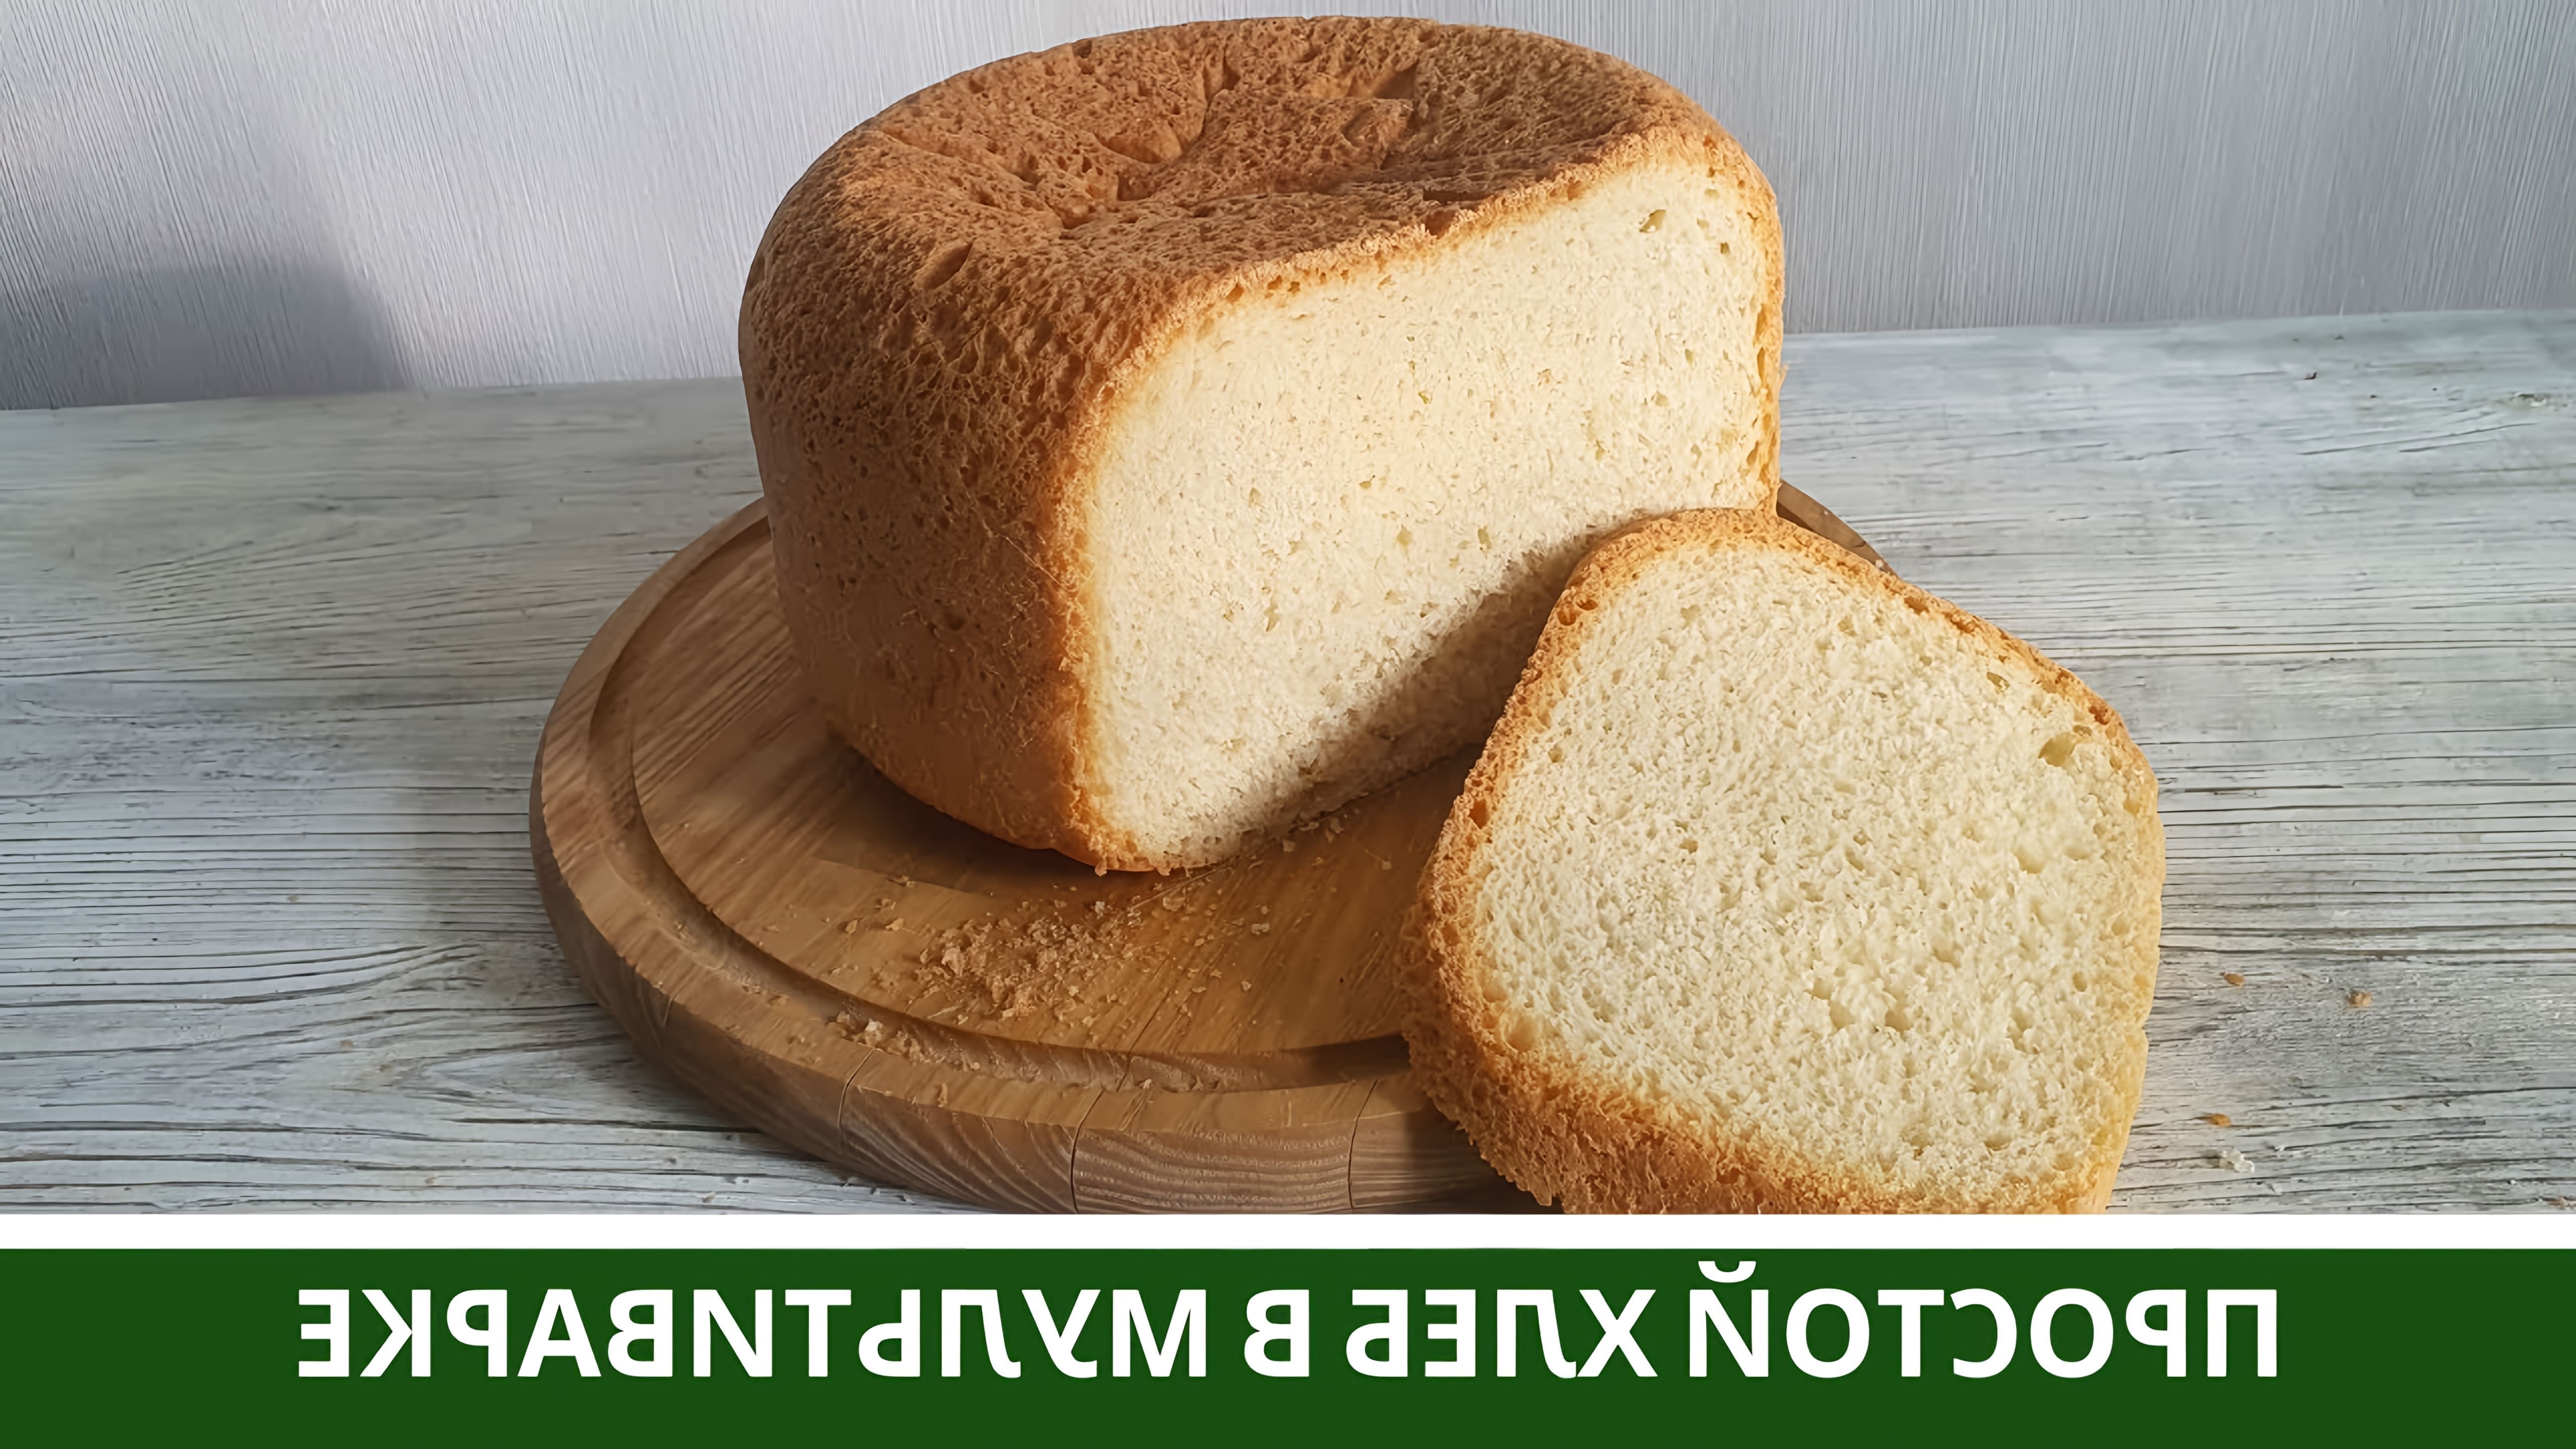 В этом видео демонстрируется процесс приготовления простого белого хлеба в мультиварке